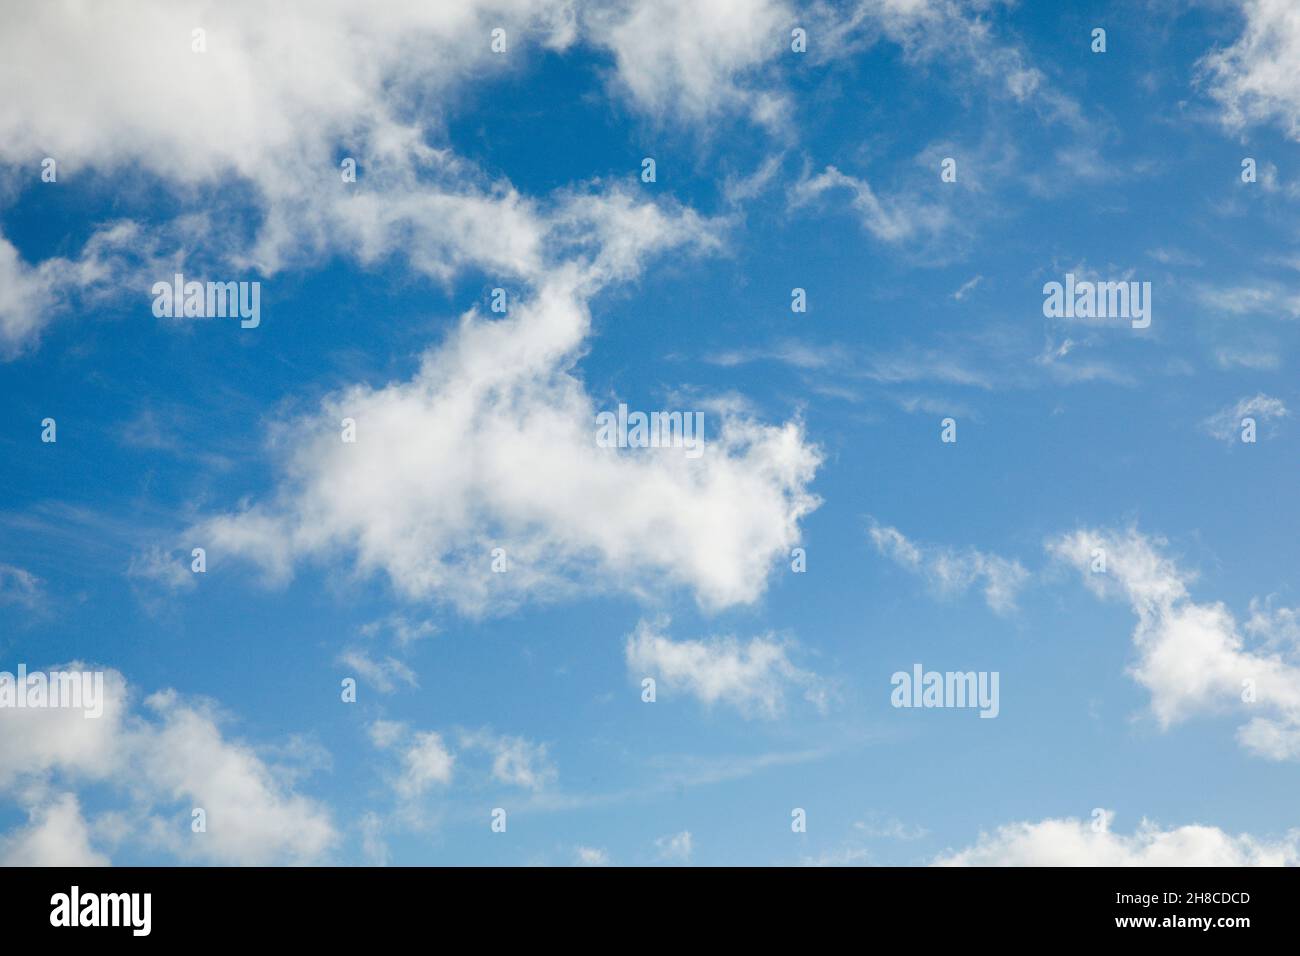 Plumas y nubes fugaces adornan el cielo azul con fuertes vientos, Suiza Foto de stock